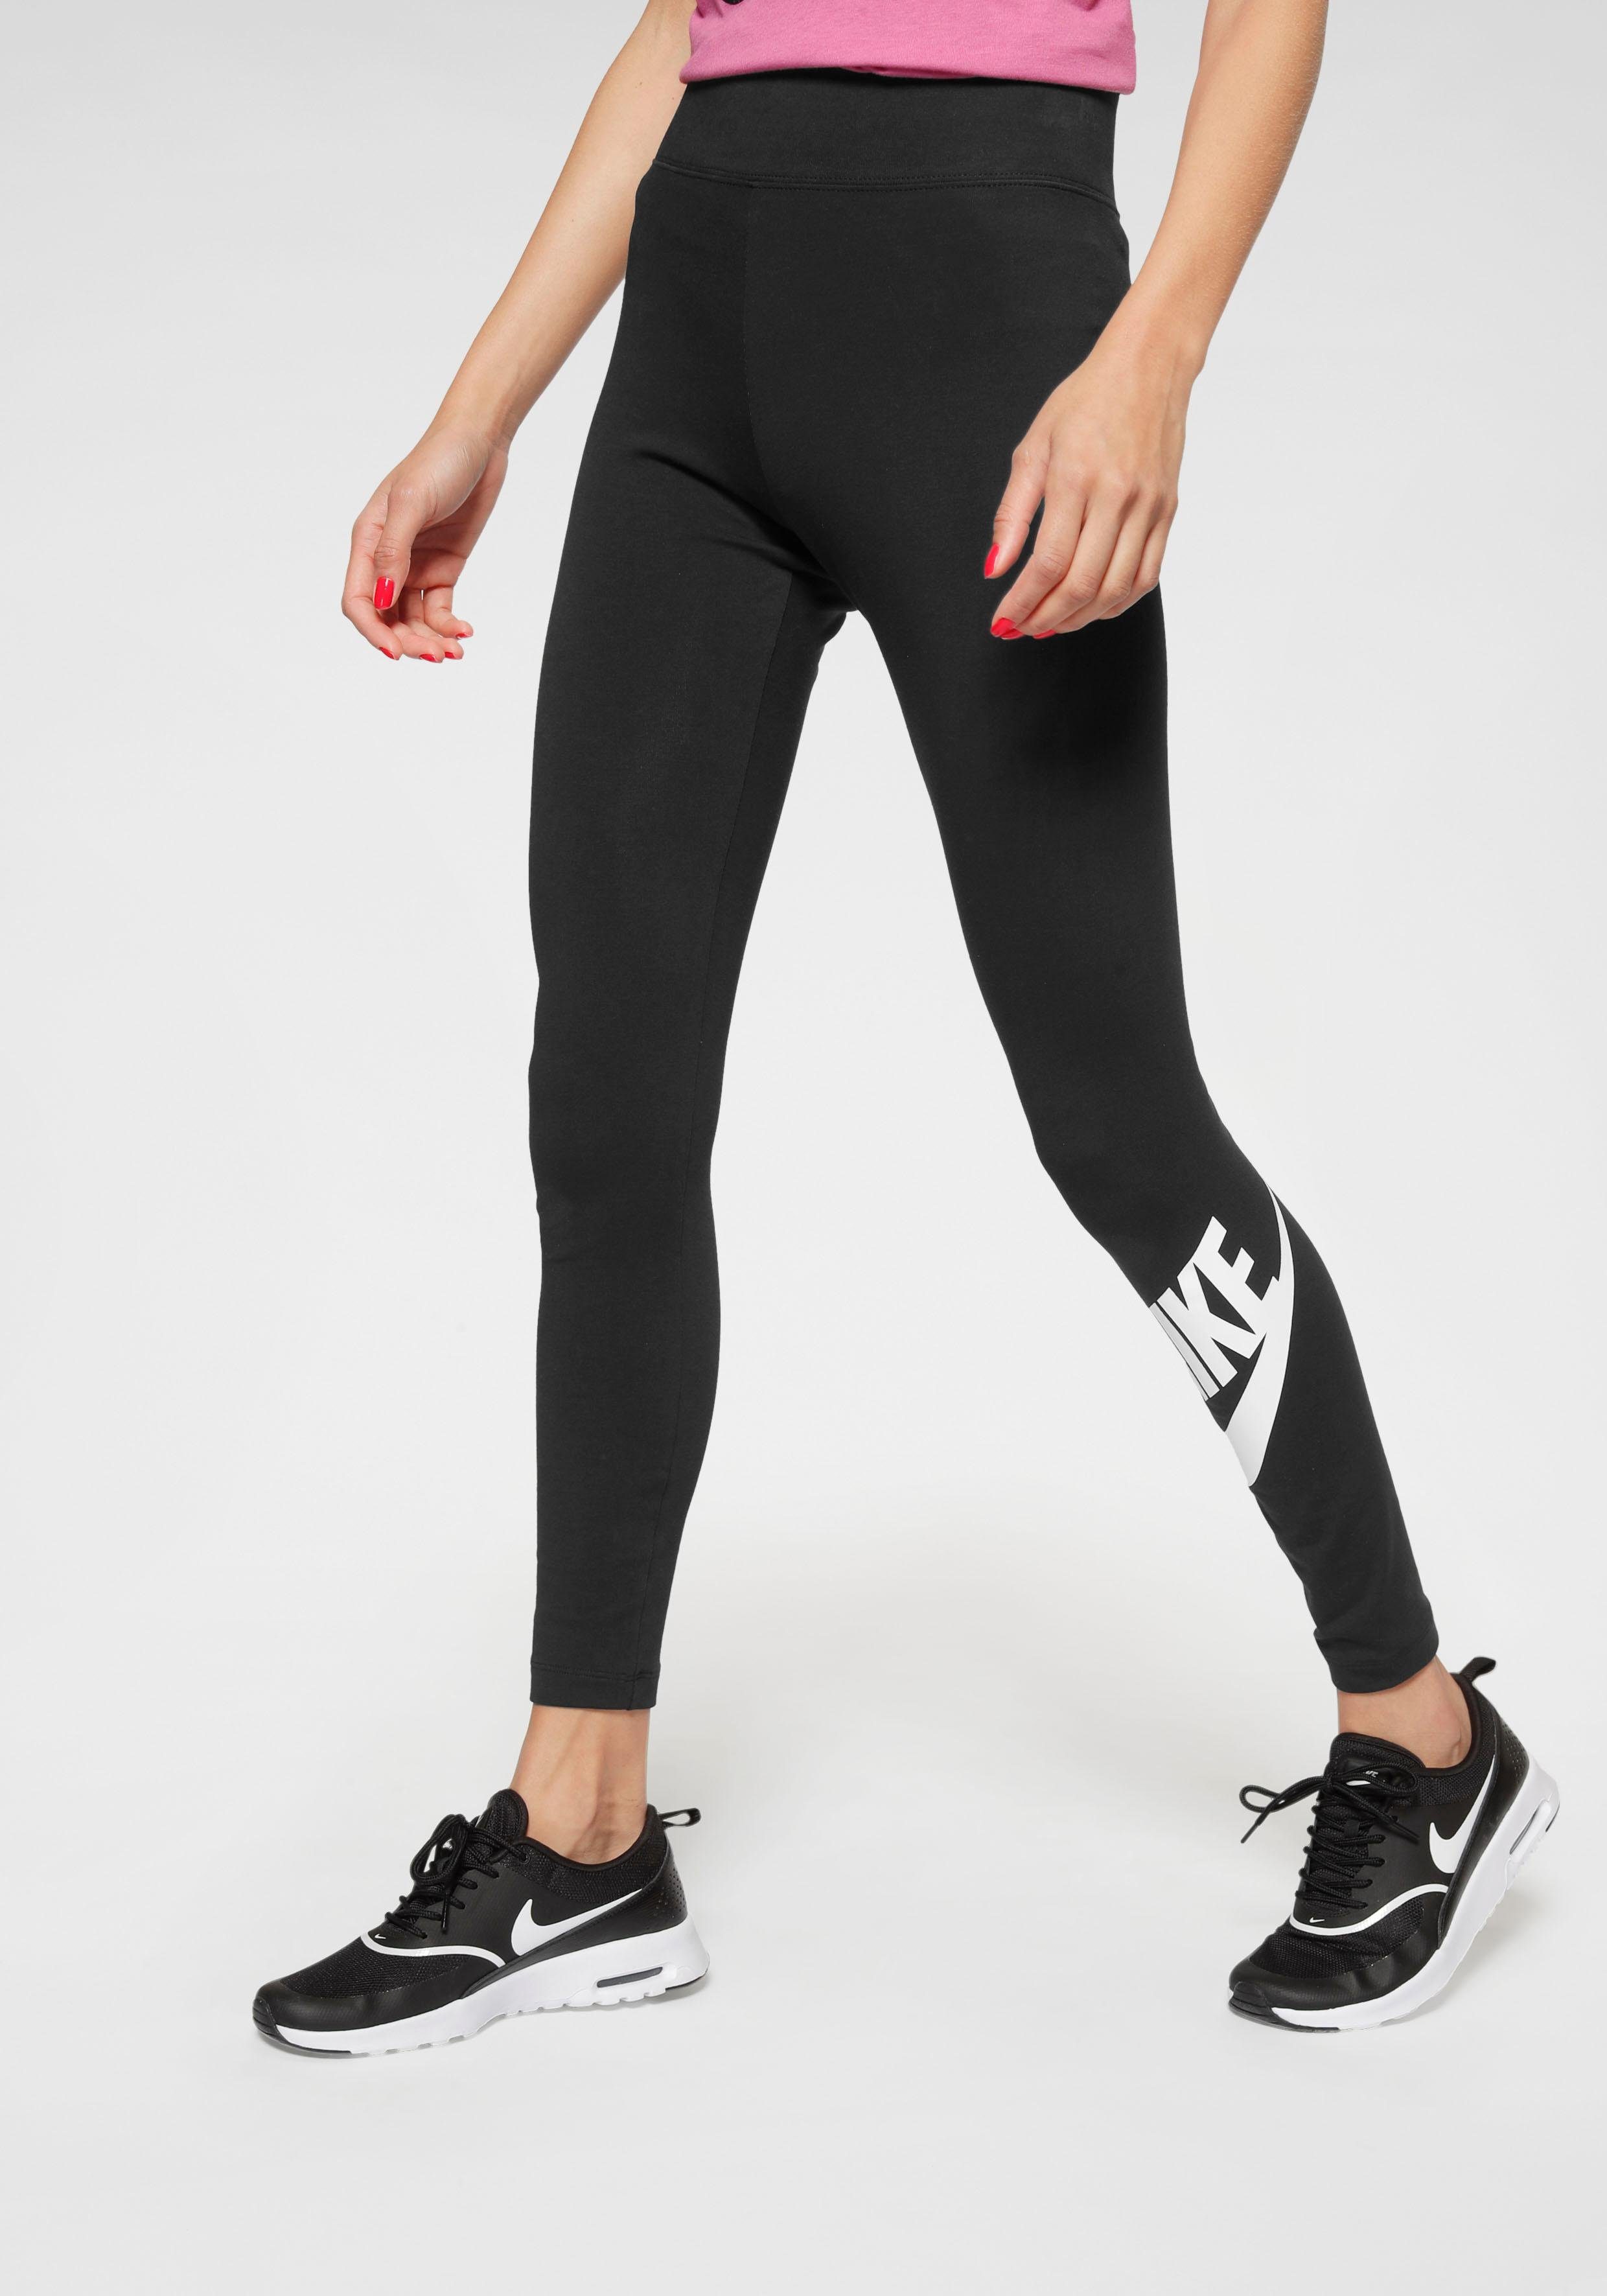 Nike Sportswear Leggings »Nike Sportswear Leg-A-See Women's High-Waisted  Leggings« online kaufen | OTTO